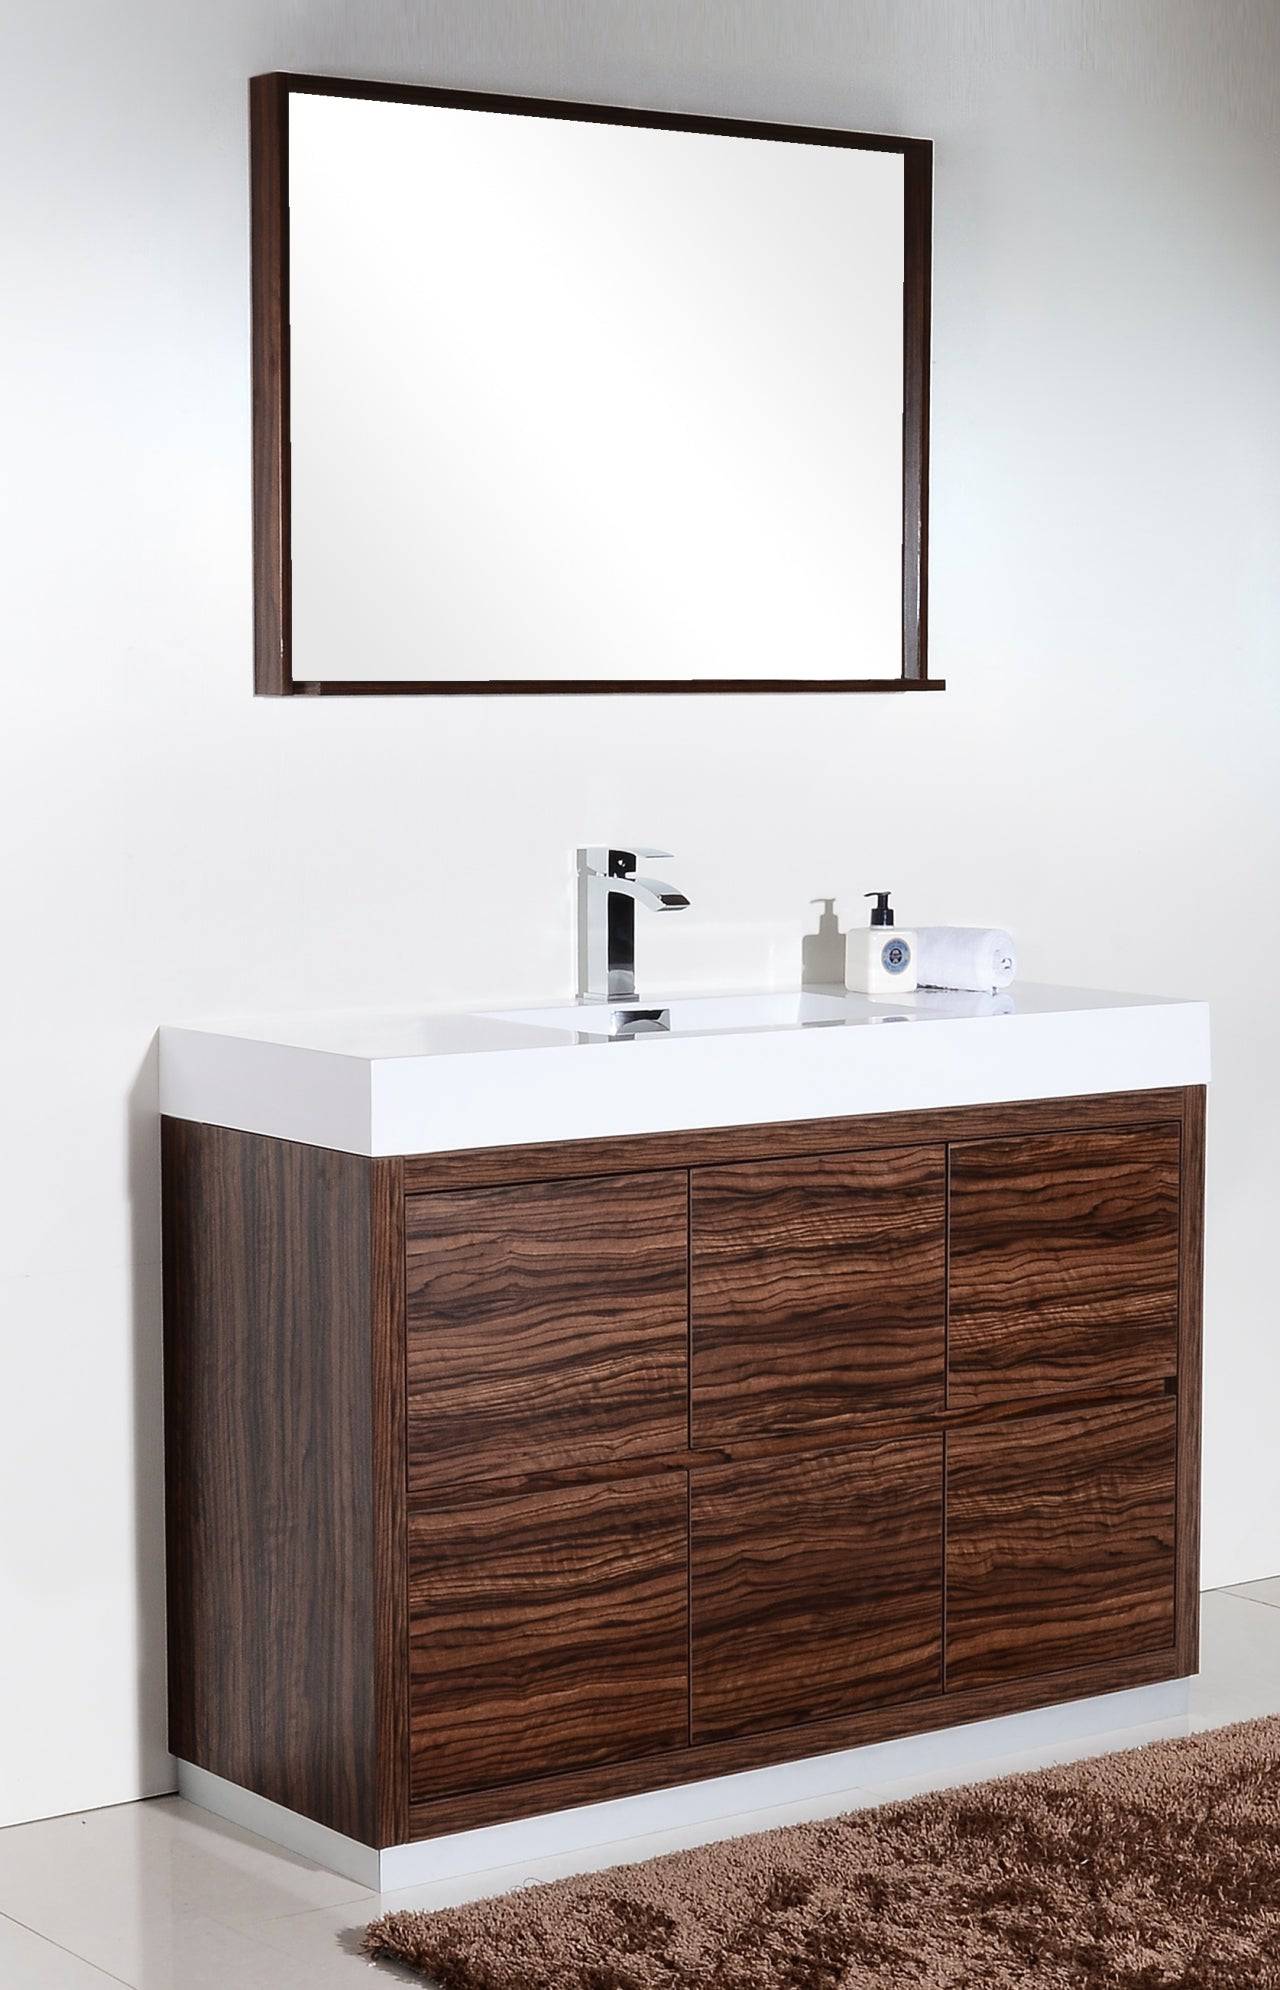 Kube Bath Bliss 48" Floor Mount Free Standing Bathroom Vanity With 6 Drawers Acrylic Countertop - Renoz